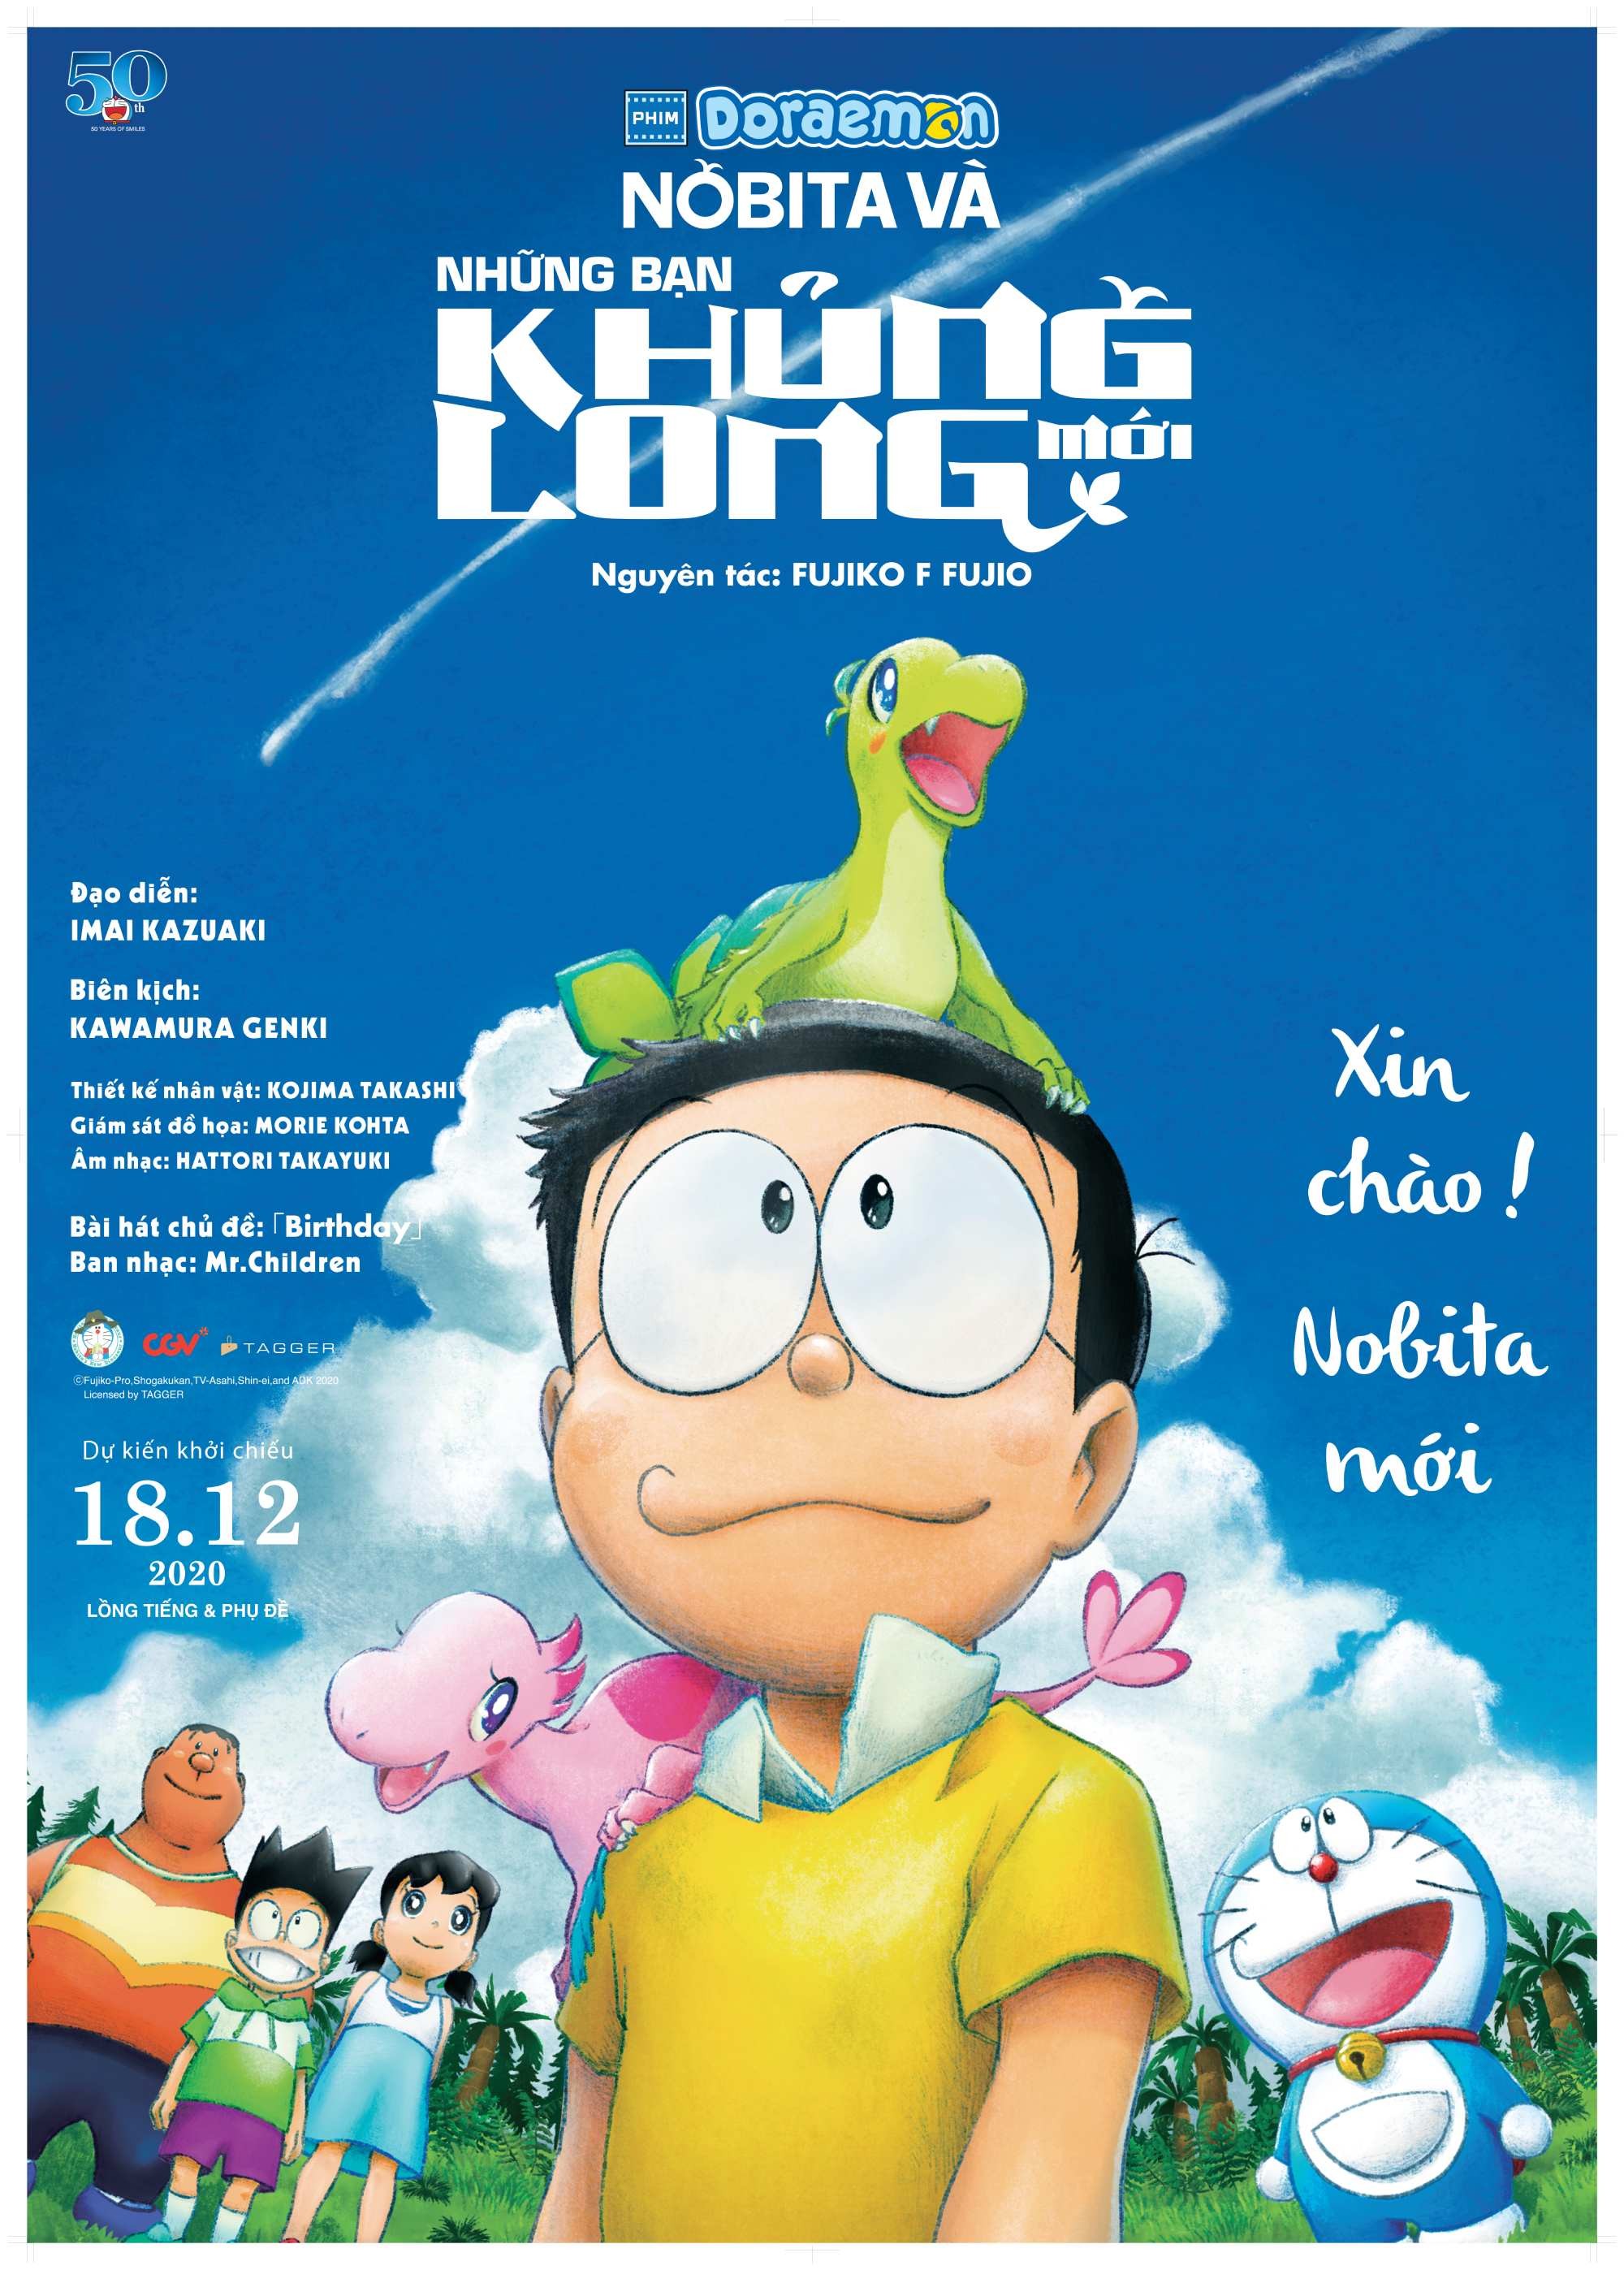 Diễn Viên Lồng Tiếng và Đạo Diễn Các Phim Doraemon